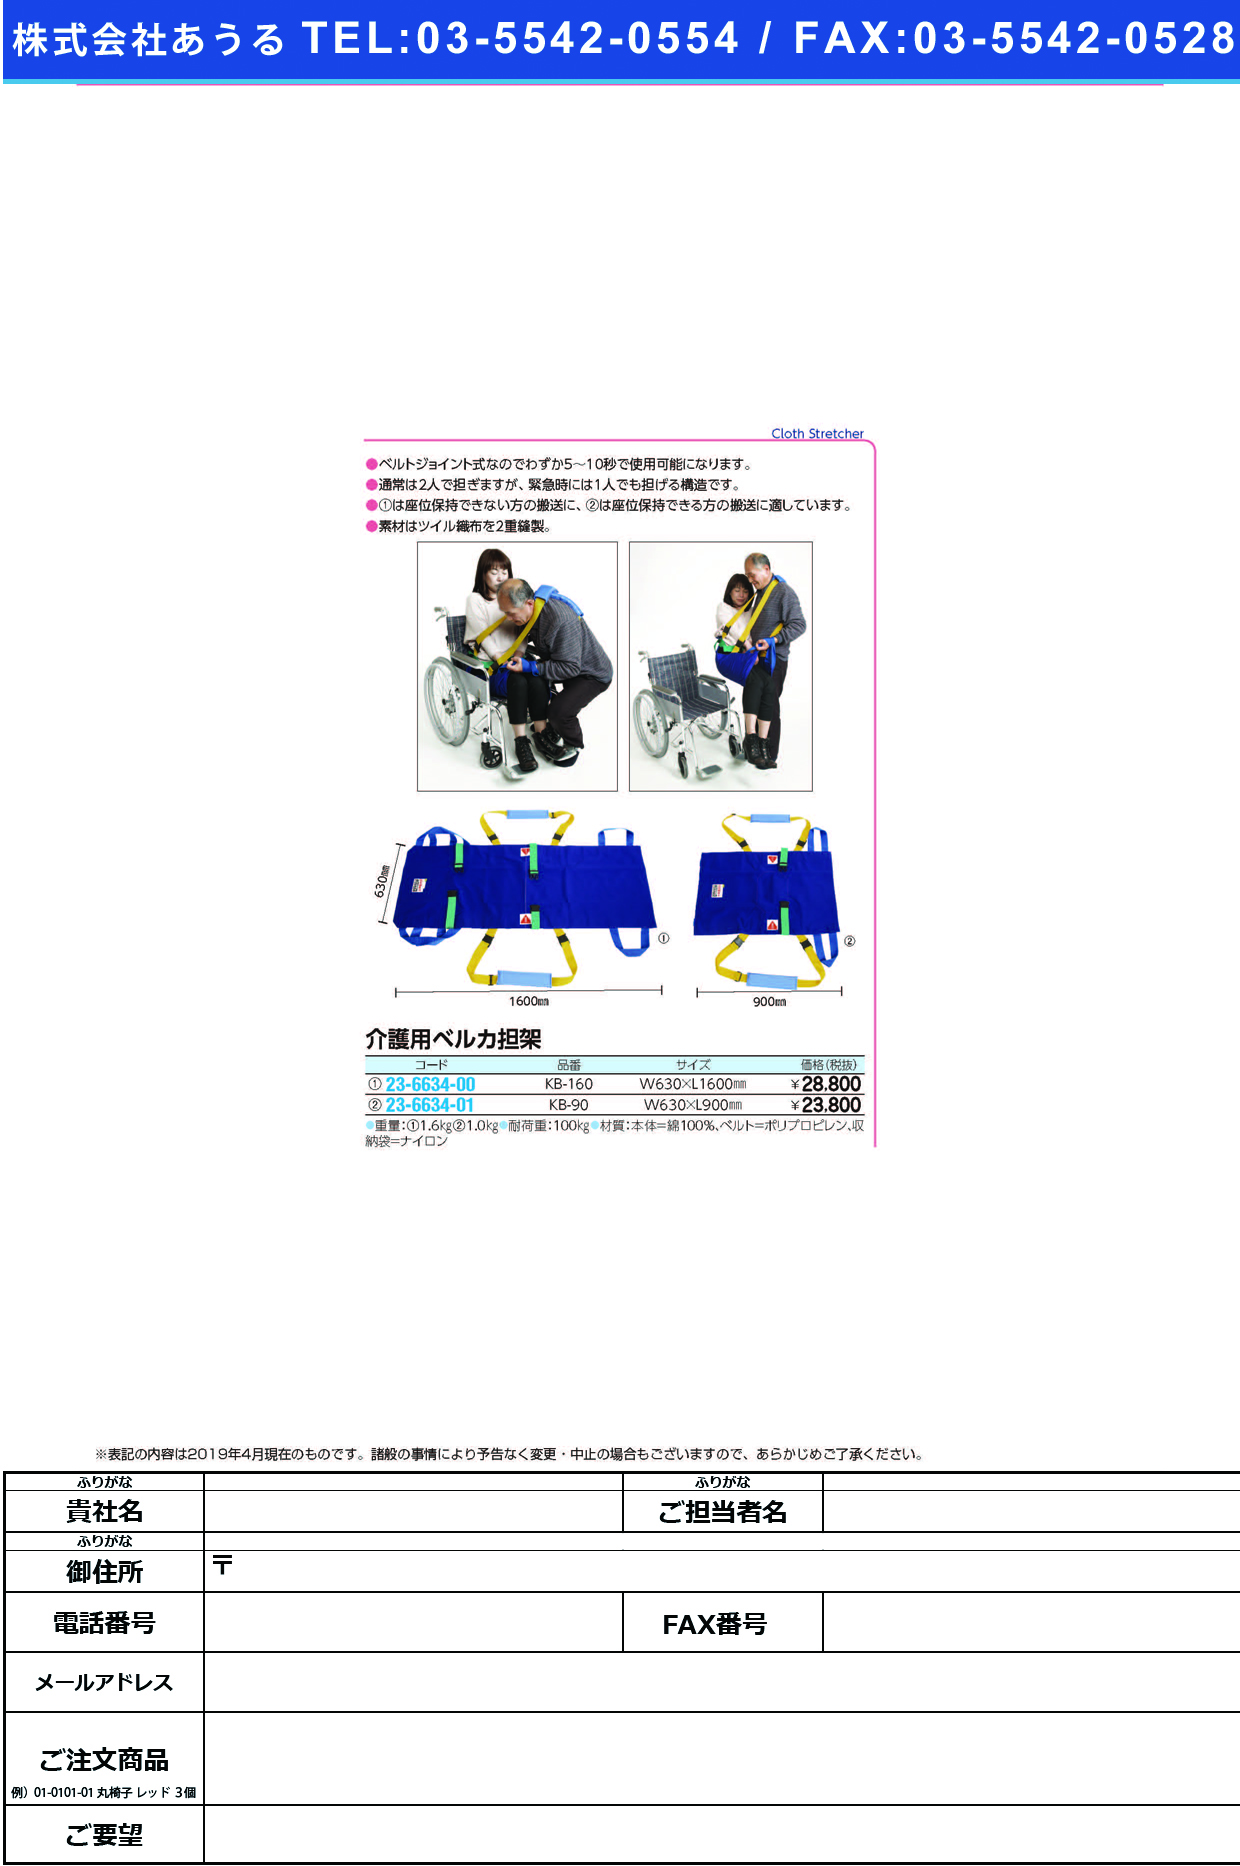 (23-6634-00)ベルカワンタッチ式介護担架 KB-160 ﾍﾞﾙｶﾜﾝﾀｯﾁｼｷｶｲｺﾞﾀﾝｶ【1枚単位】【2019年カタログ商品】